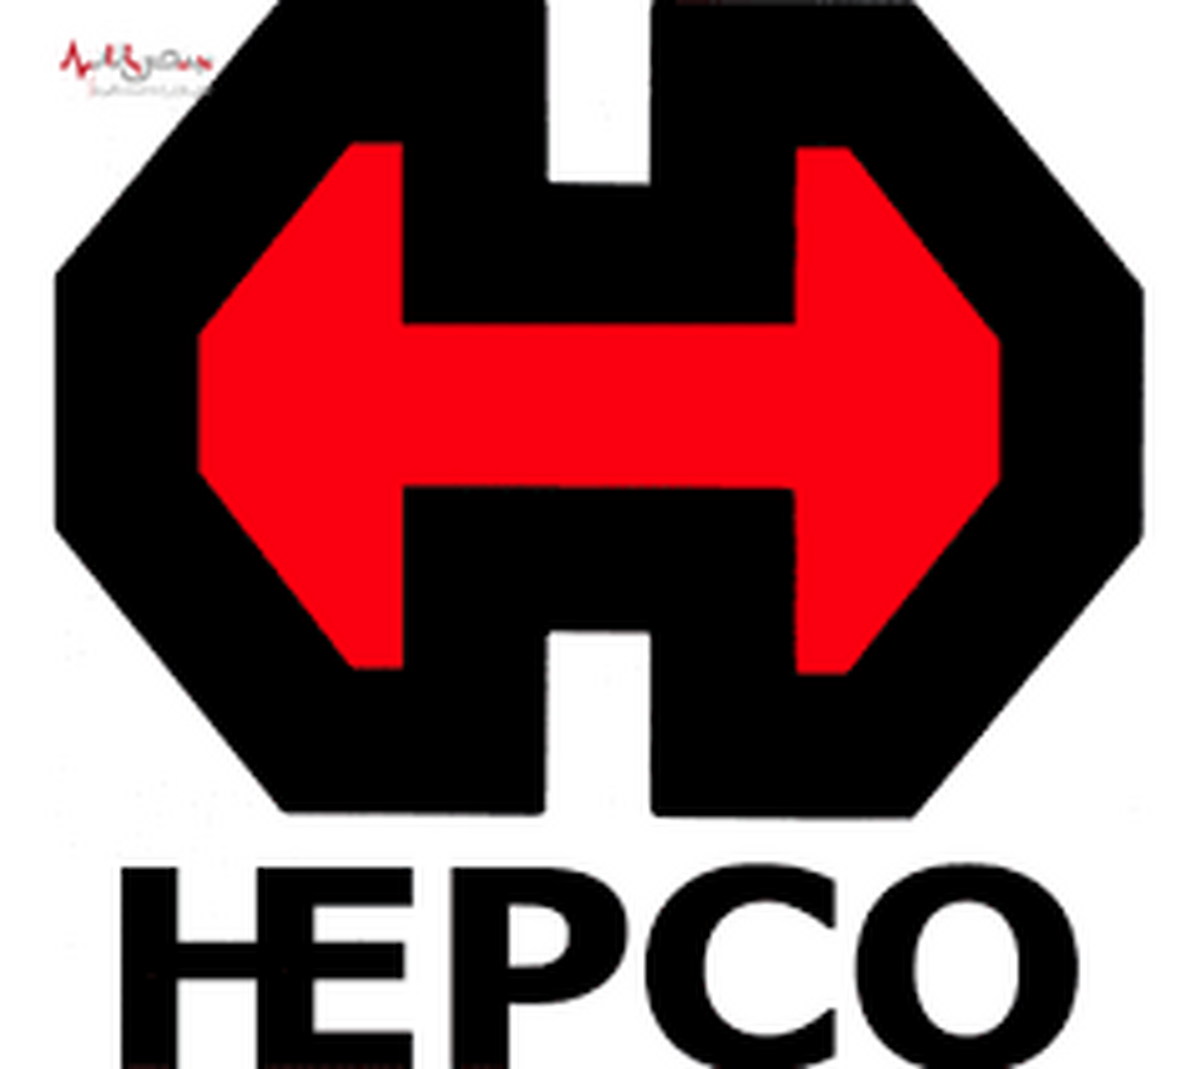 حسین قربانی، مدیرعامل هپکو در مجمع عمومی سالیانه این شرکت اعلام کرد: ۲۰ دستاورد بزرگ هپکو در سال مالی گذشته